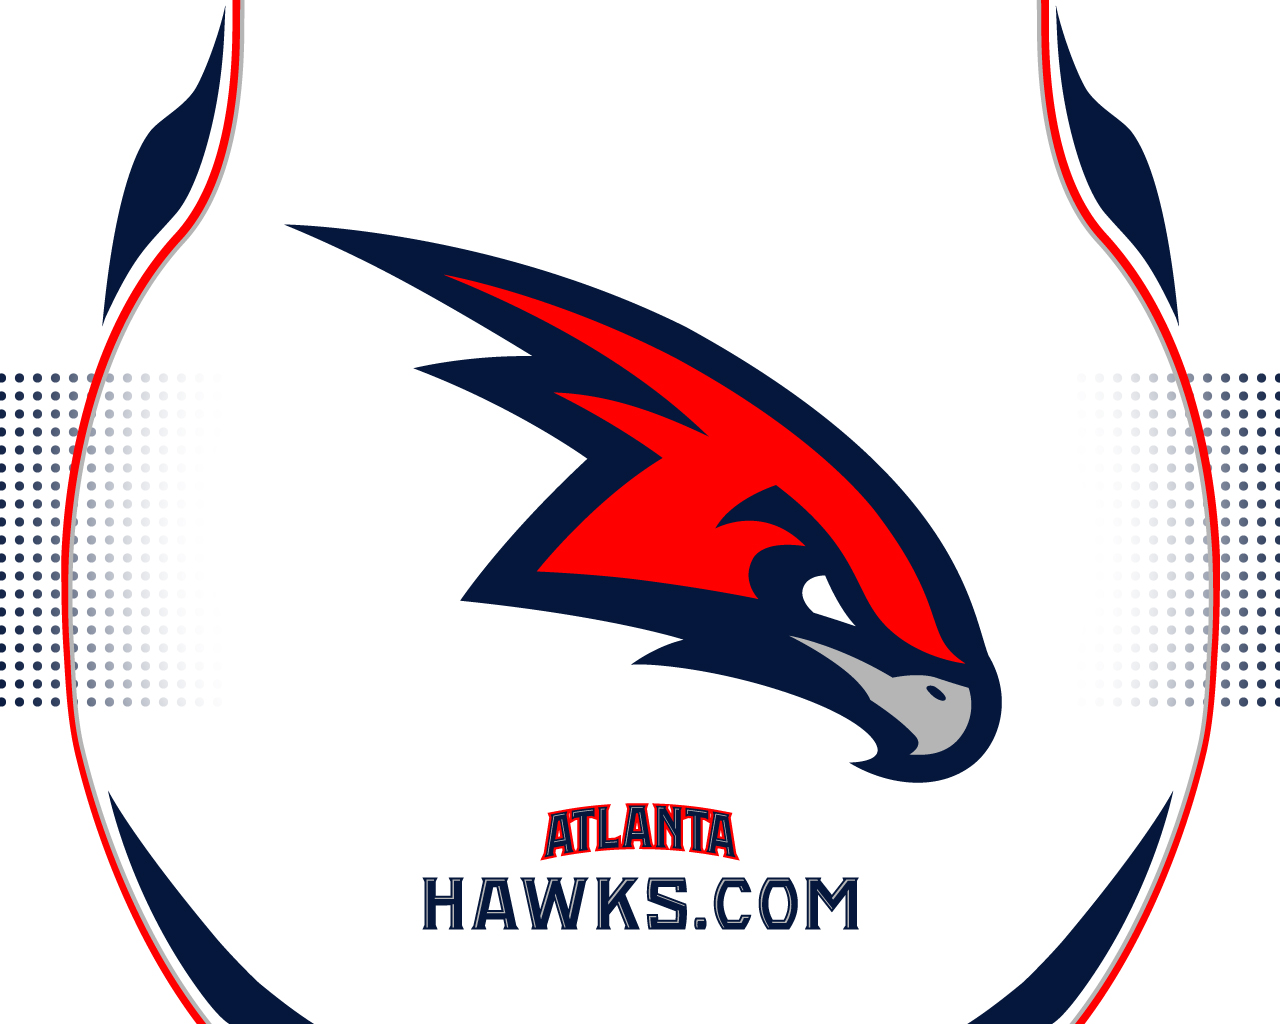 Atlanta Hawks Logo Wallpaper - WallpaperSafari